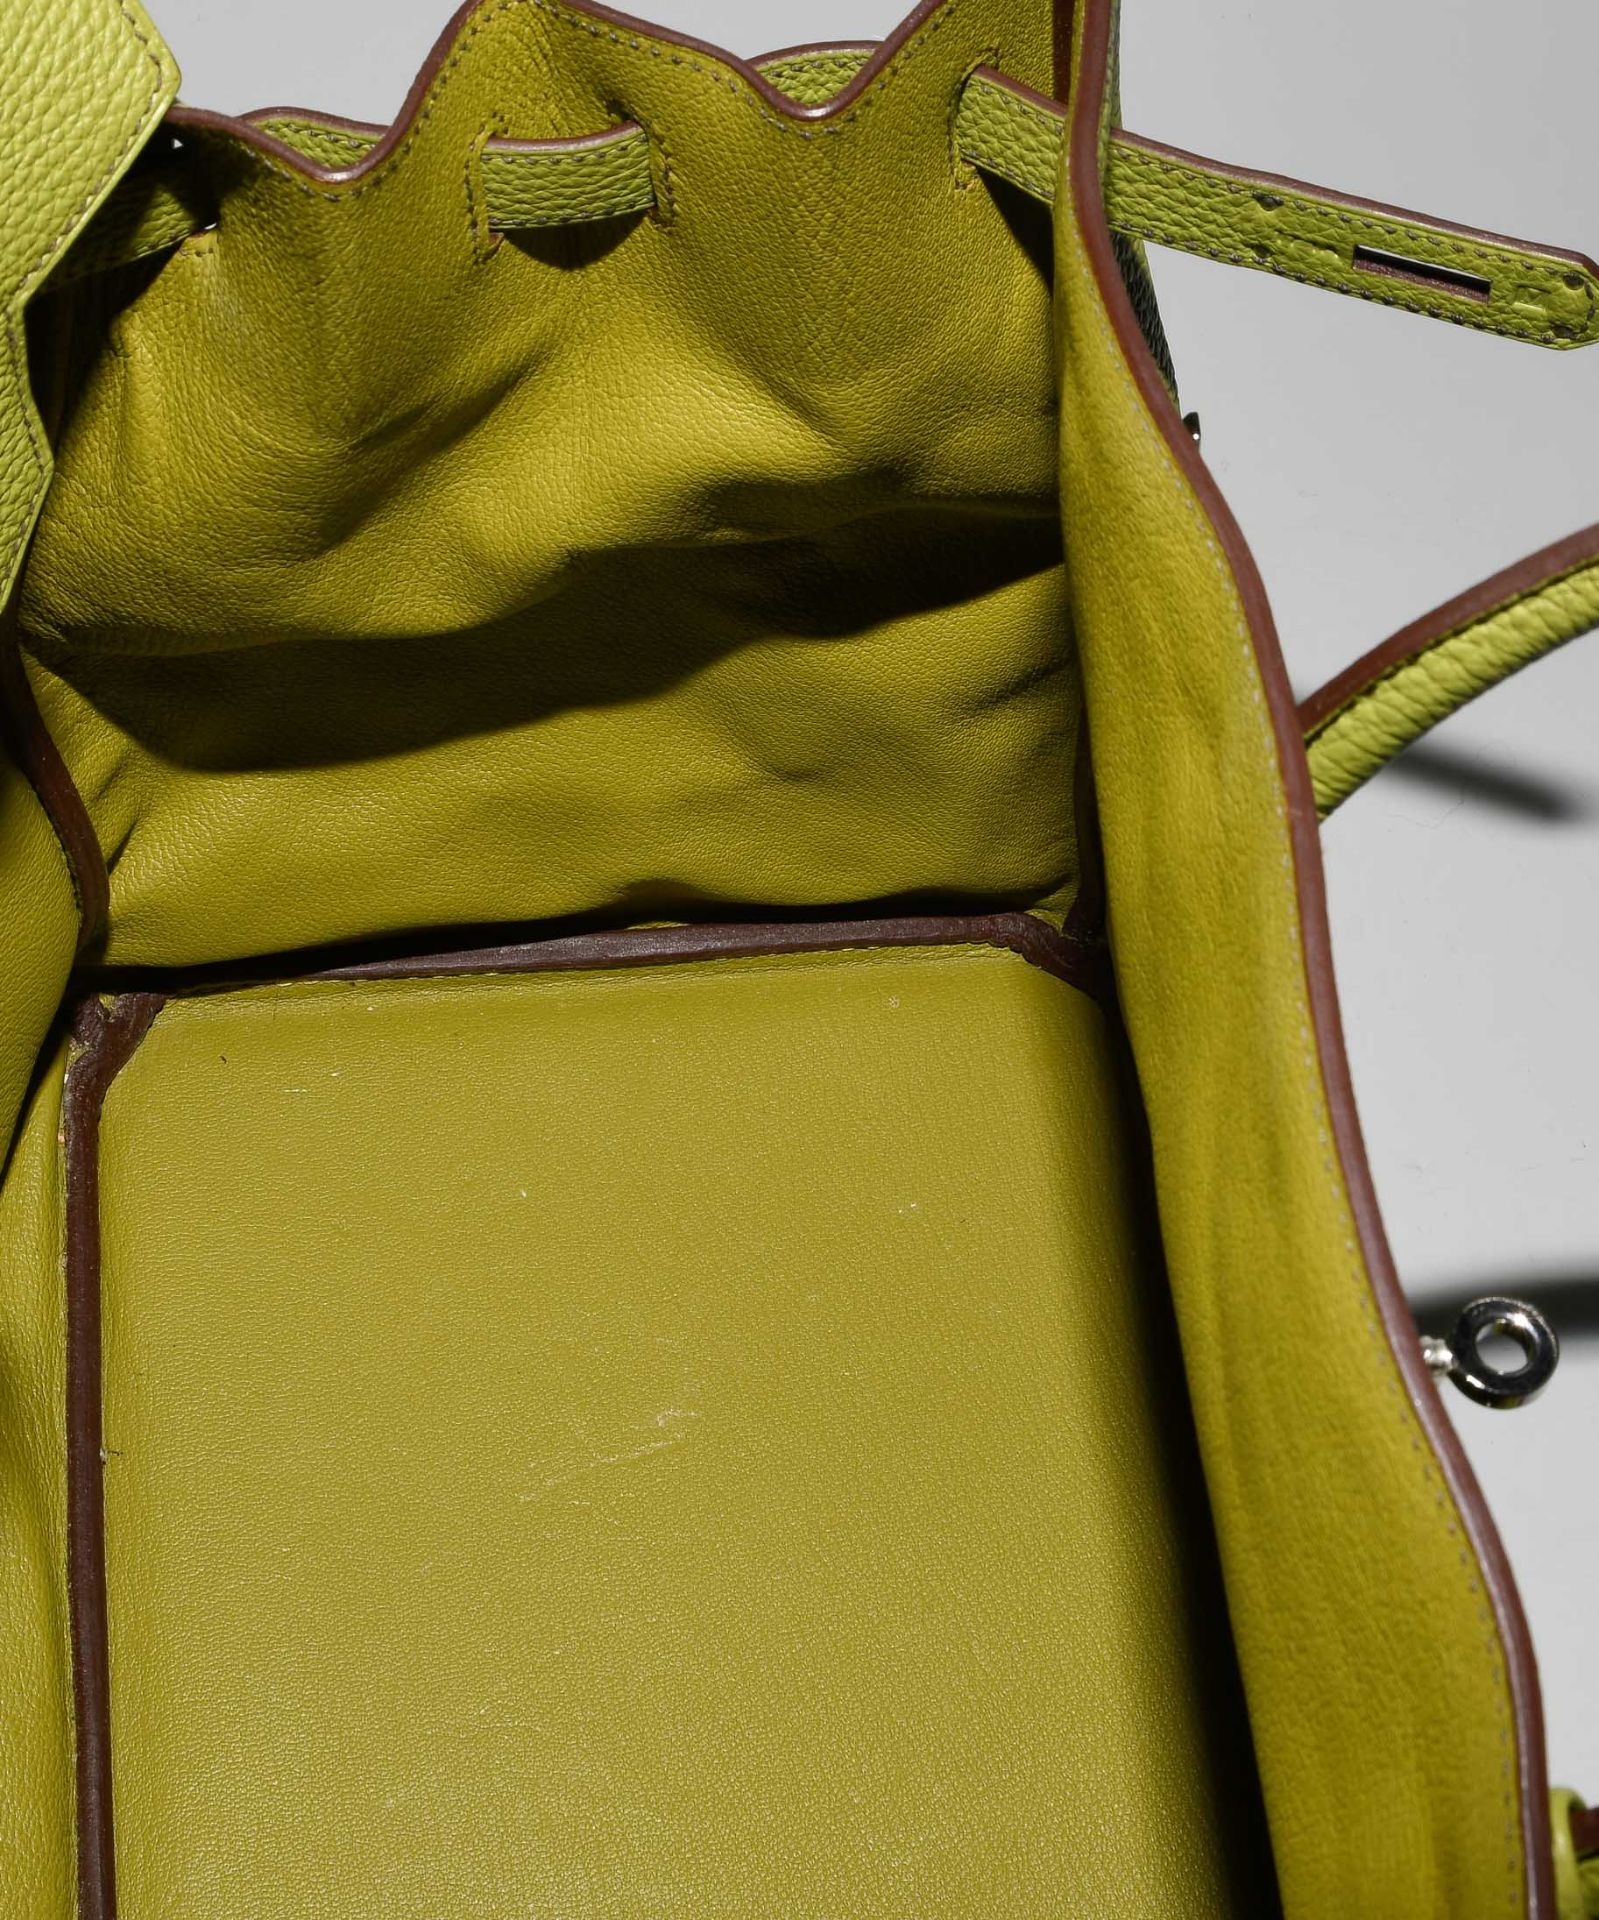 Hermès, Handtasche "Birkin" 40 cm - Image 15 of 21